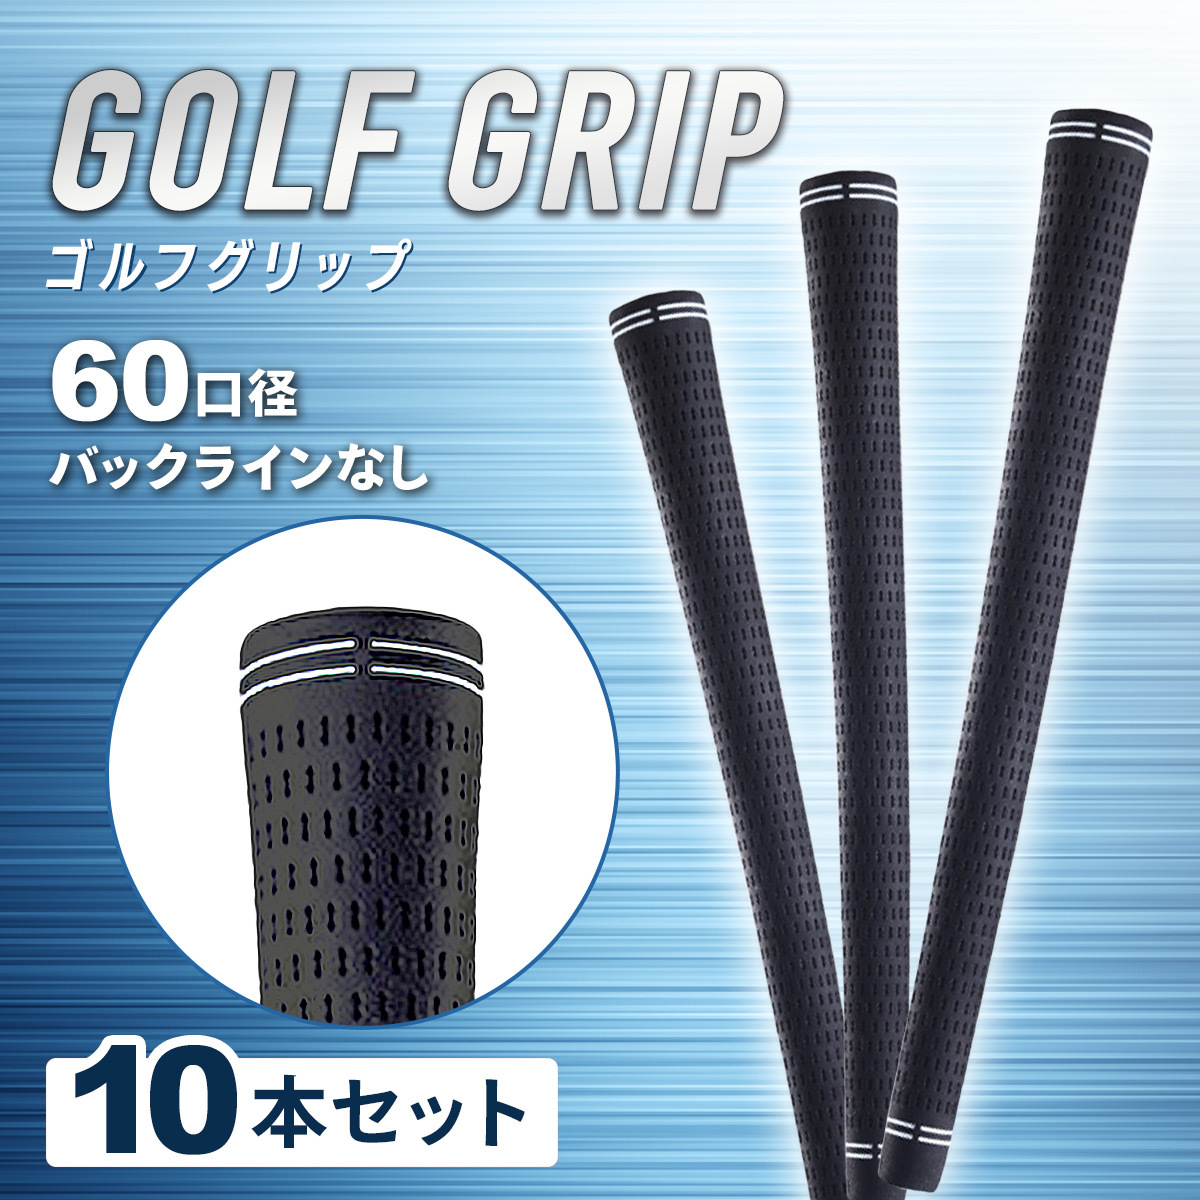 ゴルフグリップ ゴルフ グリップ 10本 ゴルフプライド ゴルフグリップセット 交換 ツアーベルベット 互換品 60 口径 社外品 golf セット_画像1